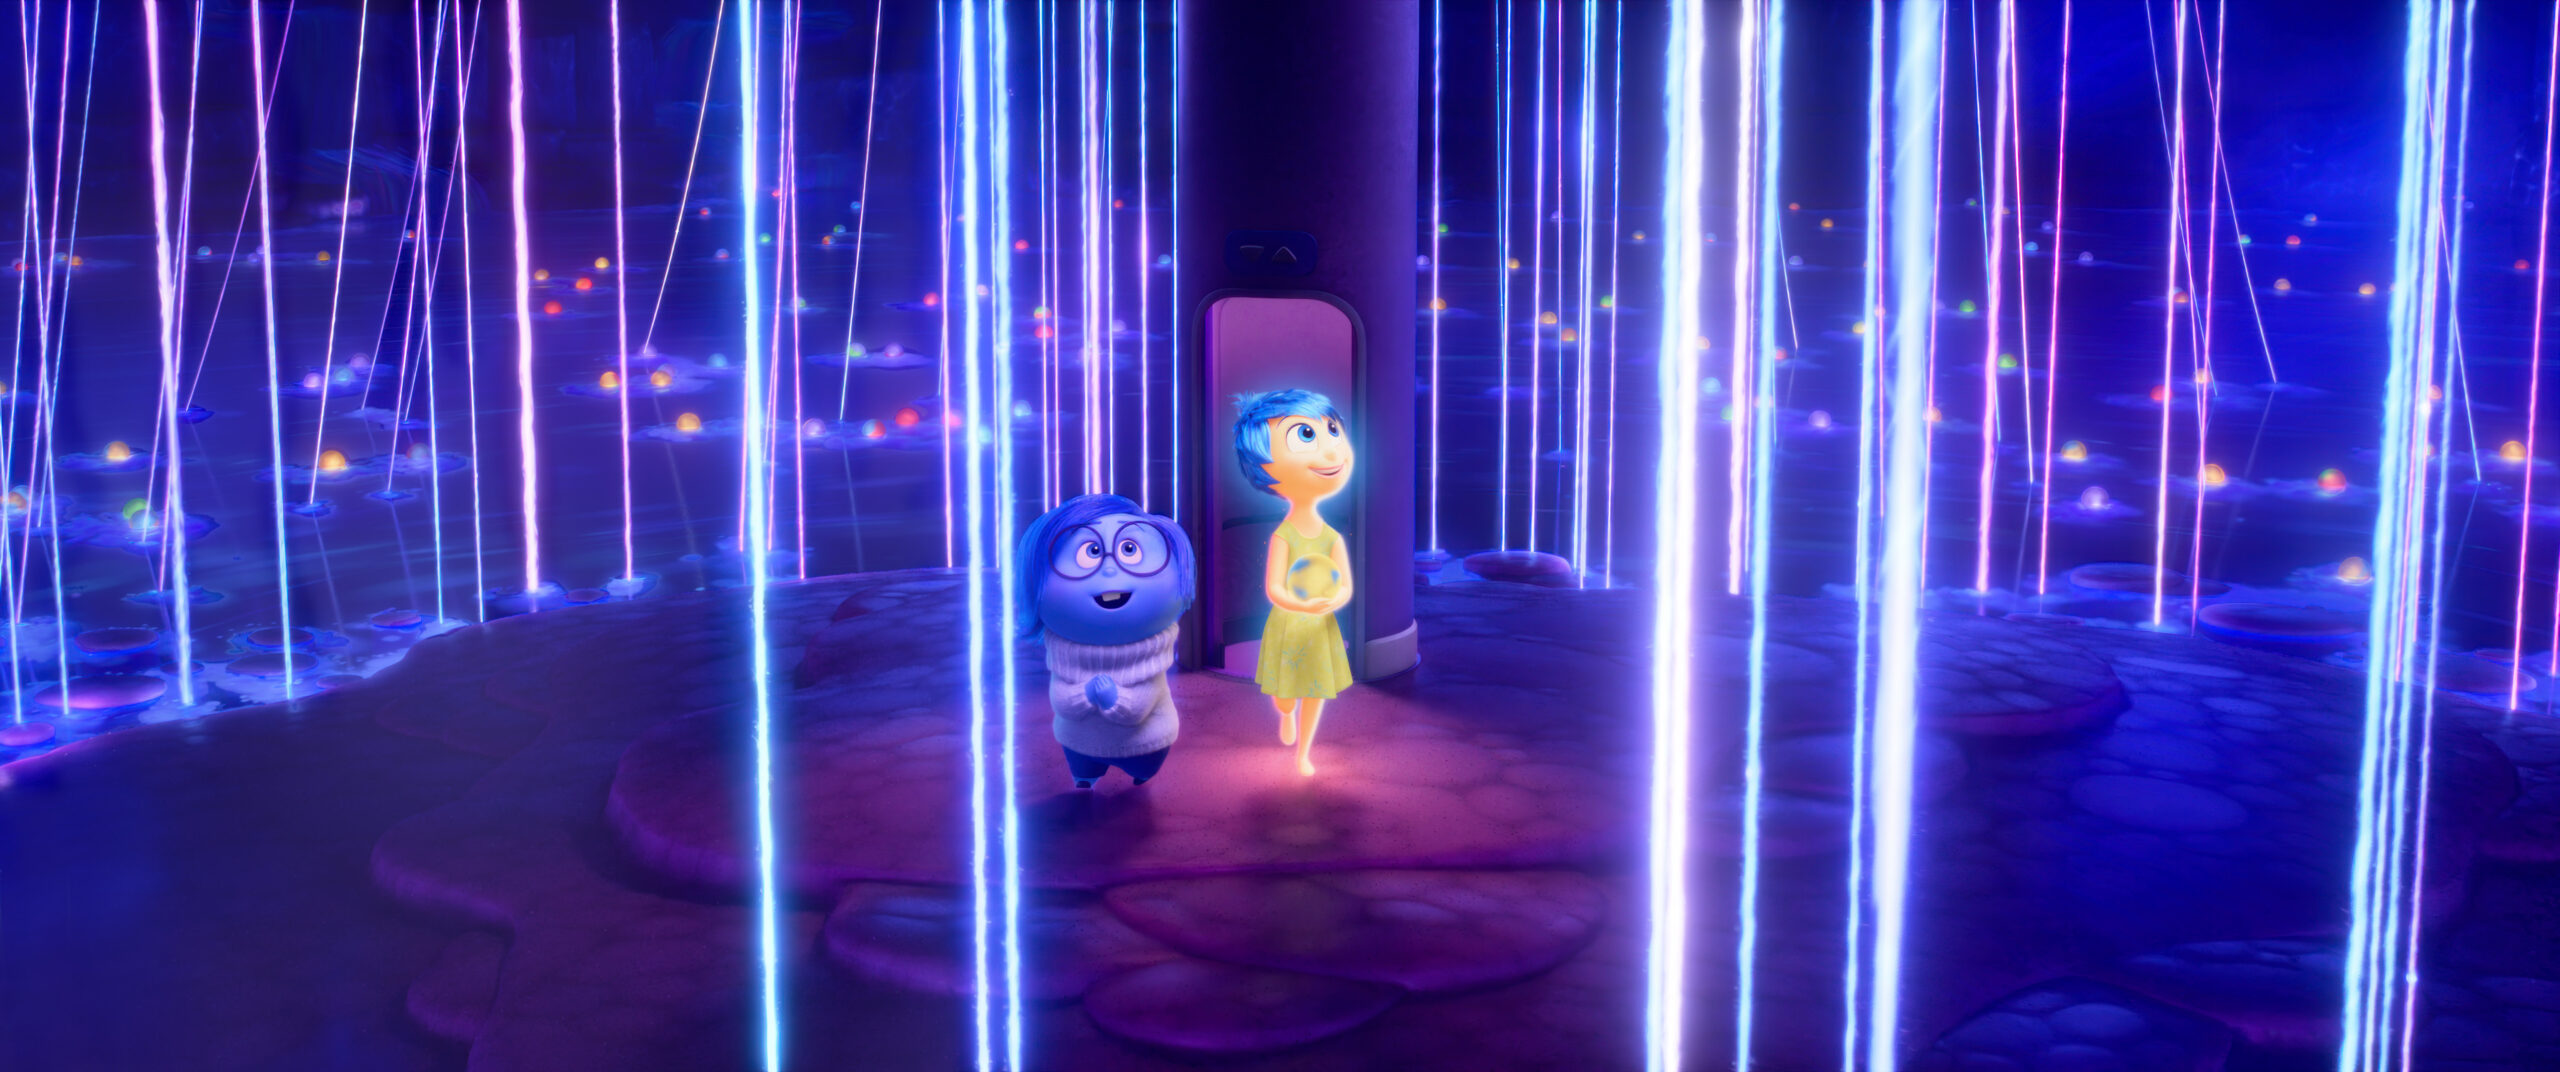 Inside Out 2, il nuovo trailer e il poster del film Disney e Pixar, dal 19 giugno al cinema